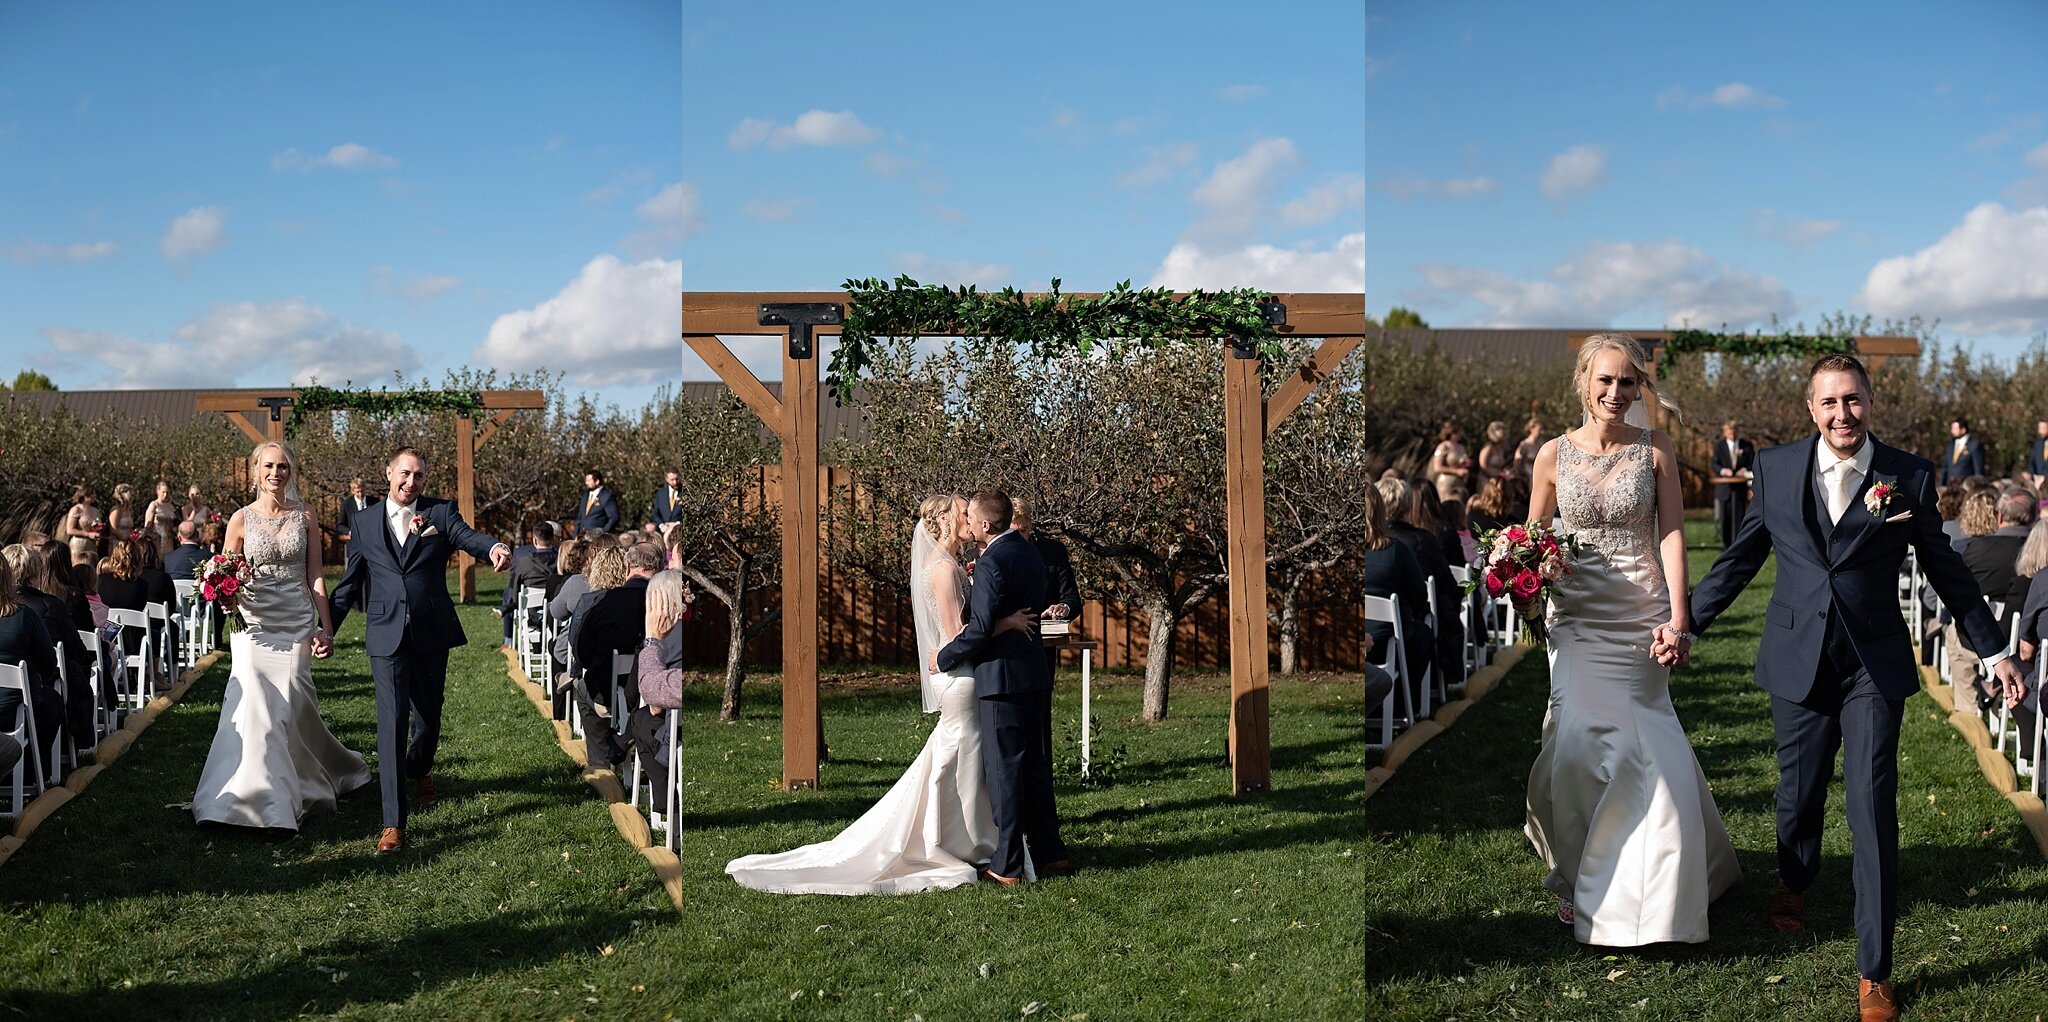 outdoor wedding ceremony at meadow barn